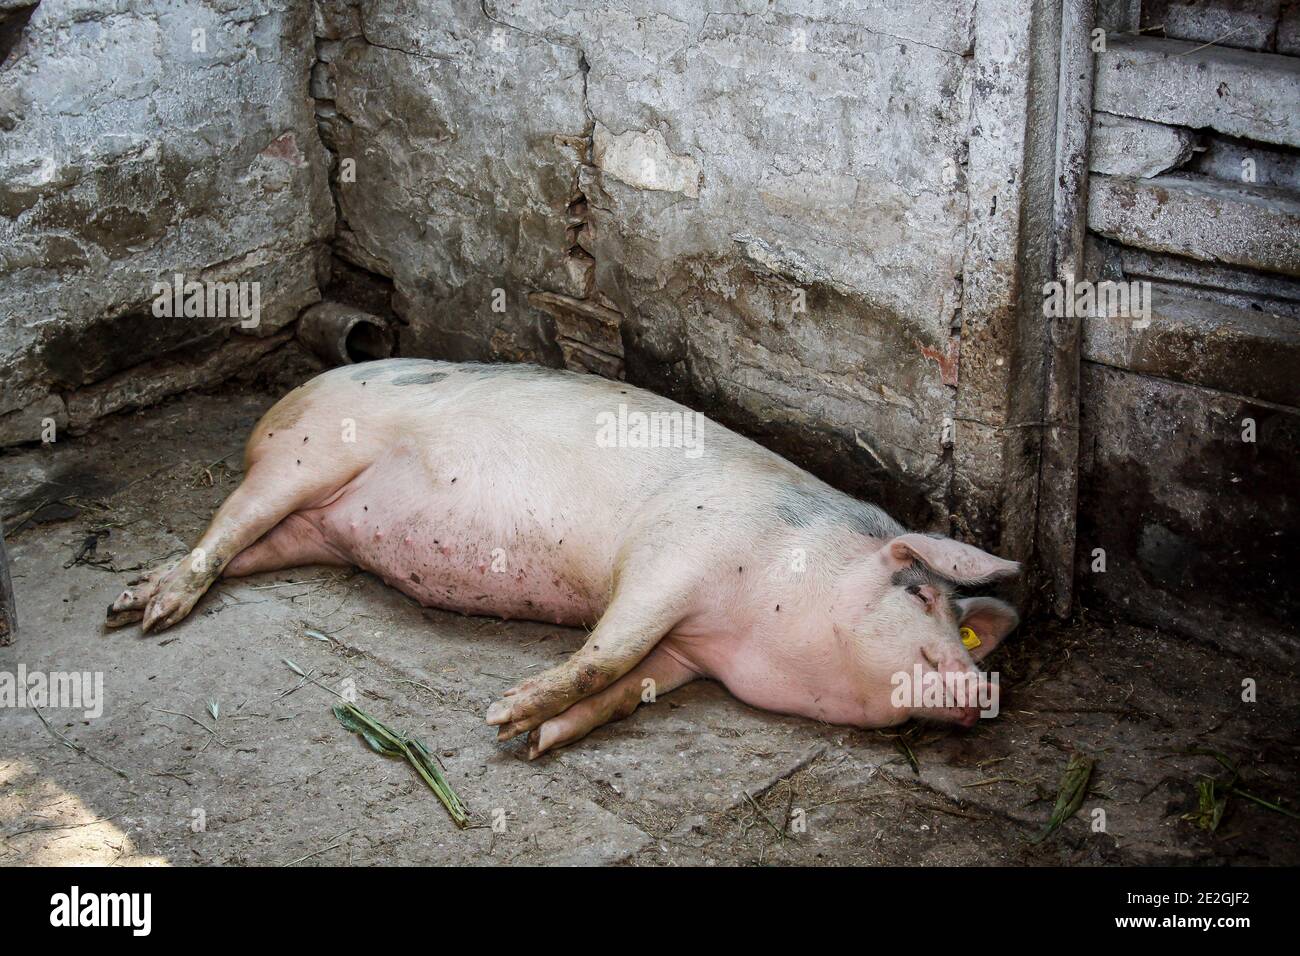 Ein Haus in Schwein in einem Schweinestall in Ruhe aufgezogen Ein bulgarisches Gehöft Stockfoto